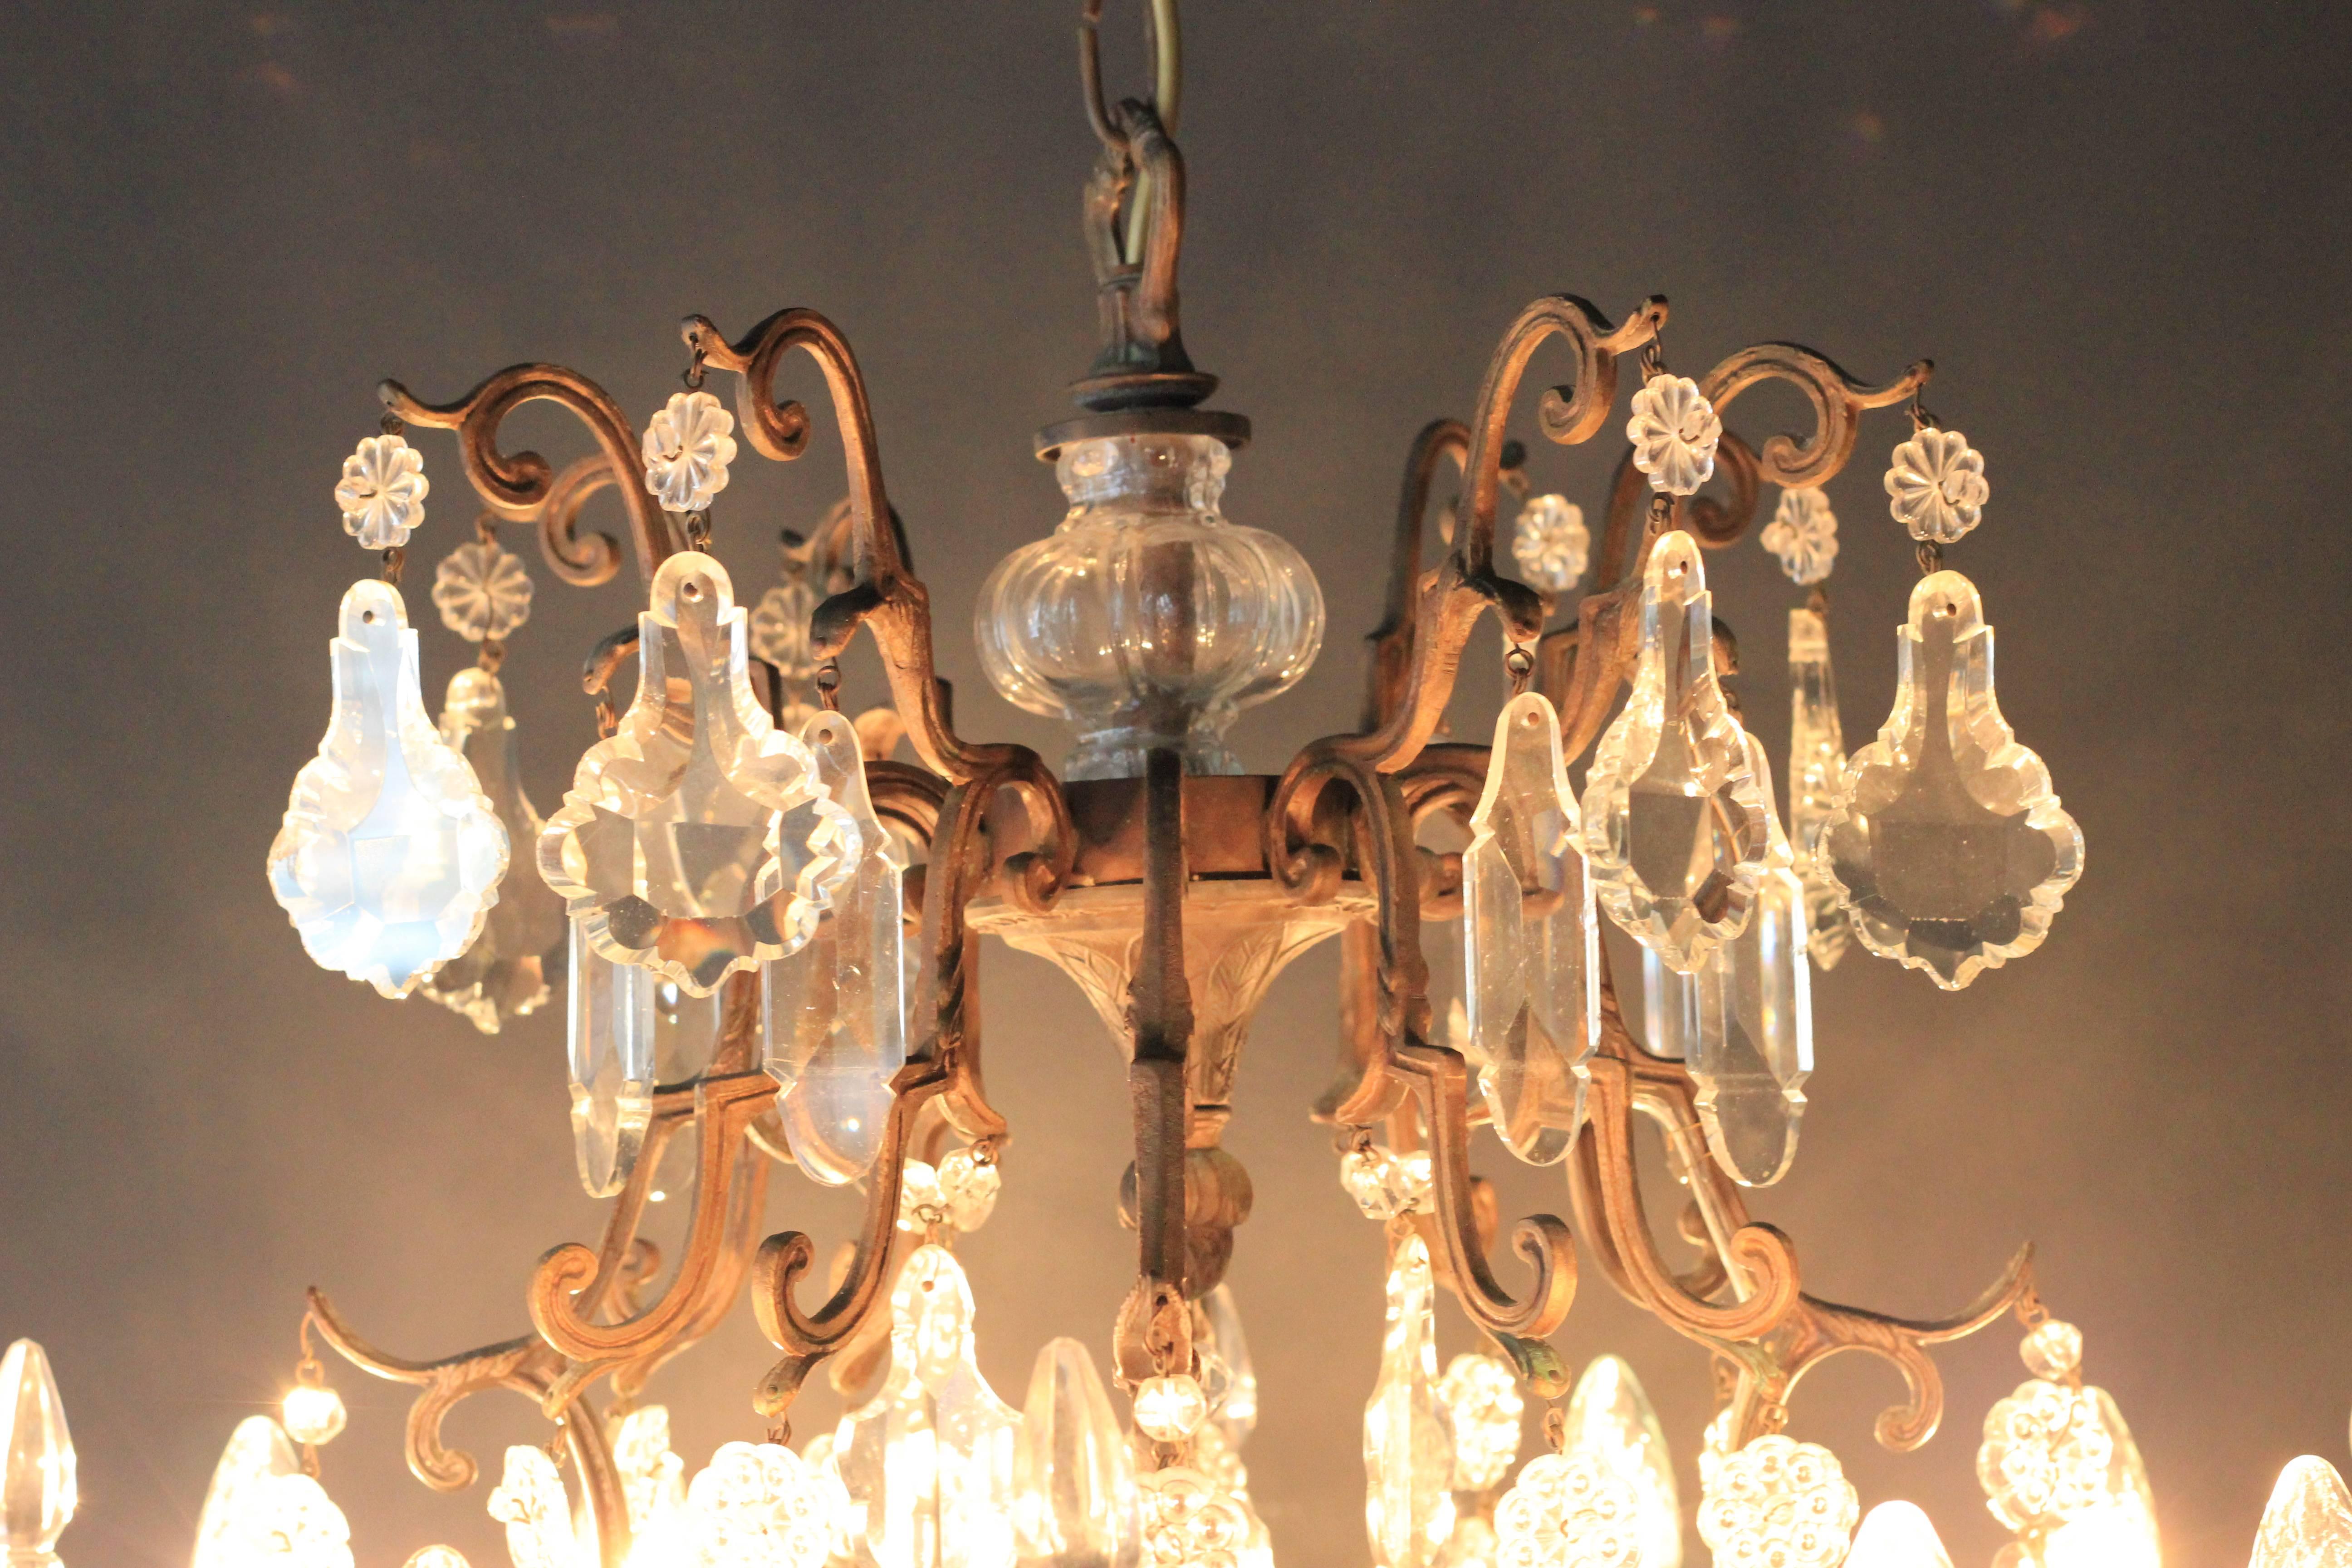 Fine Rarity Crystal Chandelier 1920 Lustre Antique Ceiling Lamp Art Nouveau WoW (Handgeknüpft)